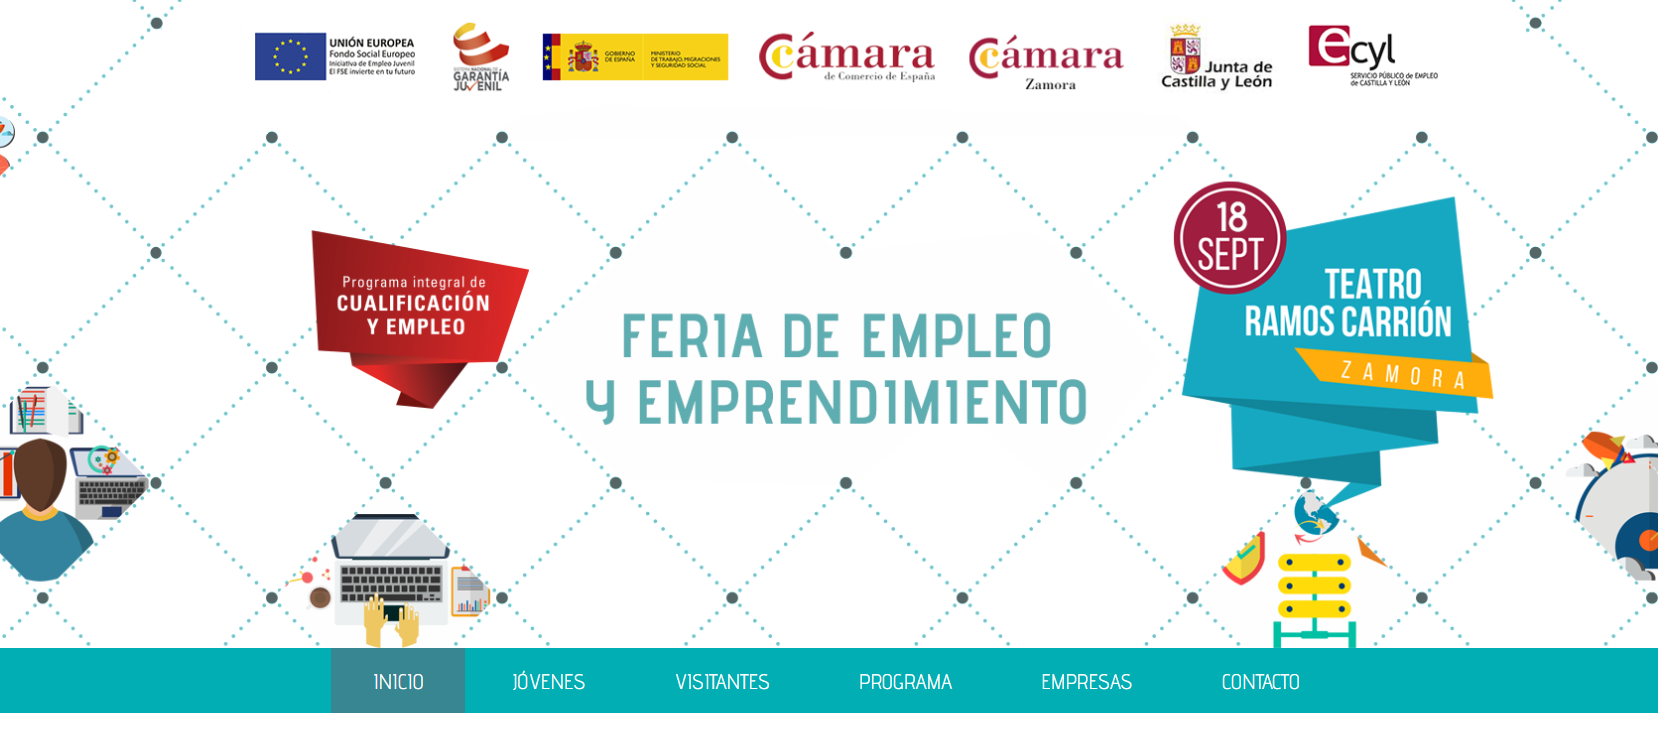 Feria de Empleo y Emprendimiento Cámara de Comercio de Zamora 2018